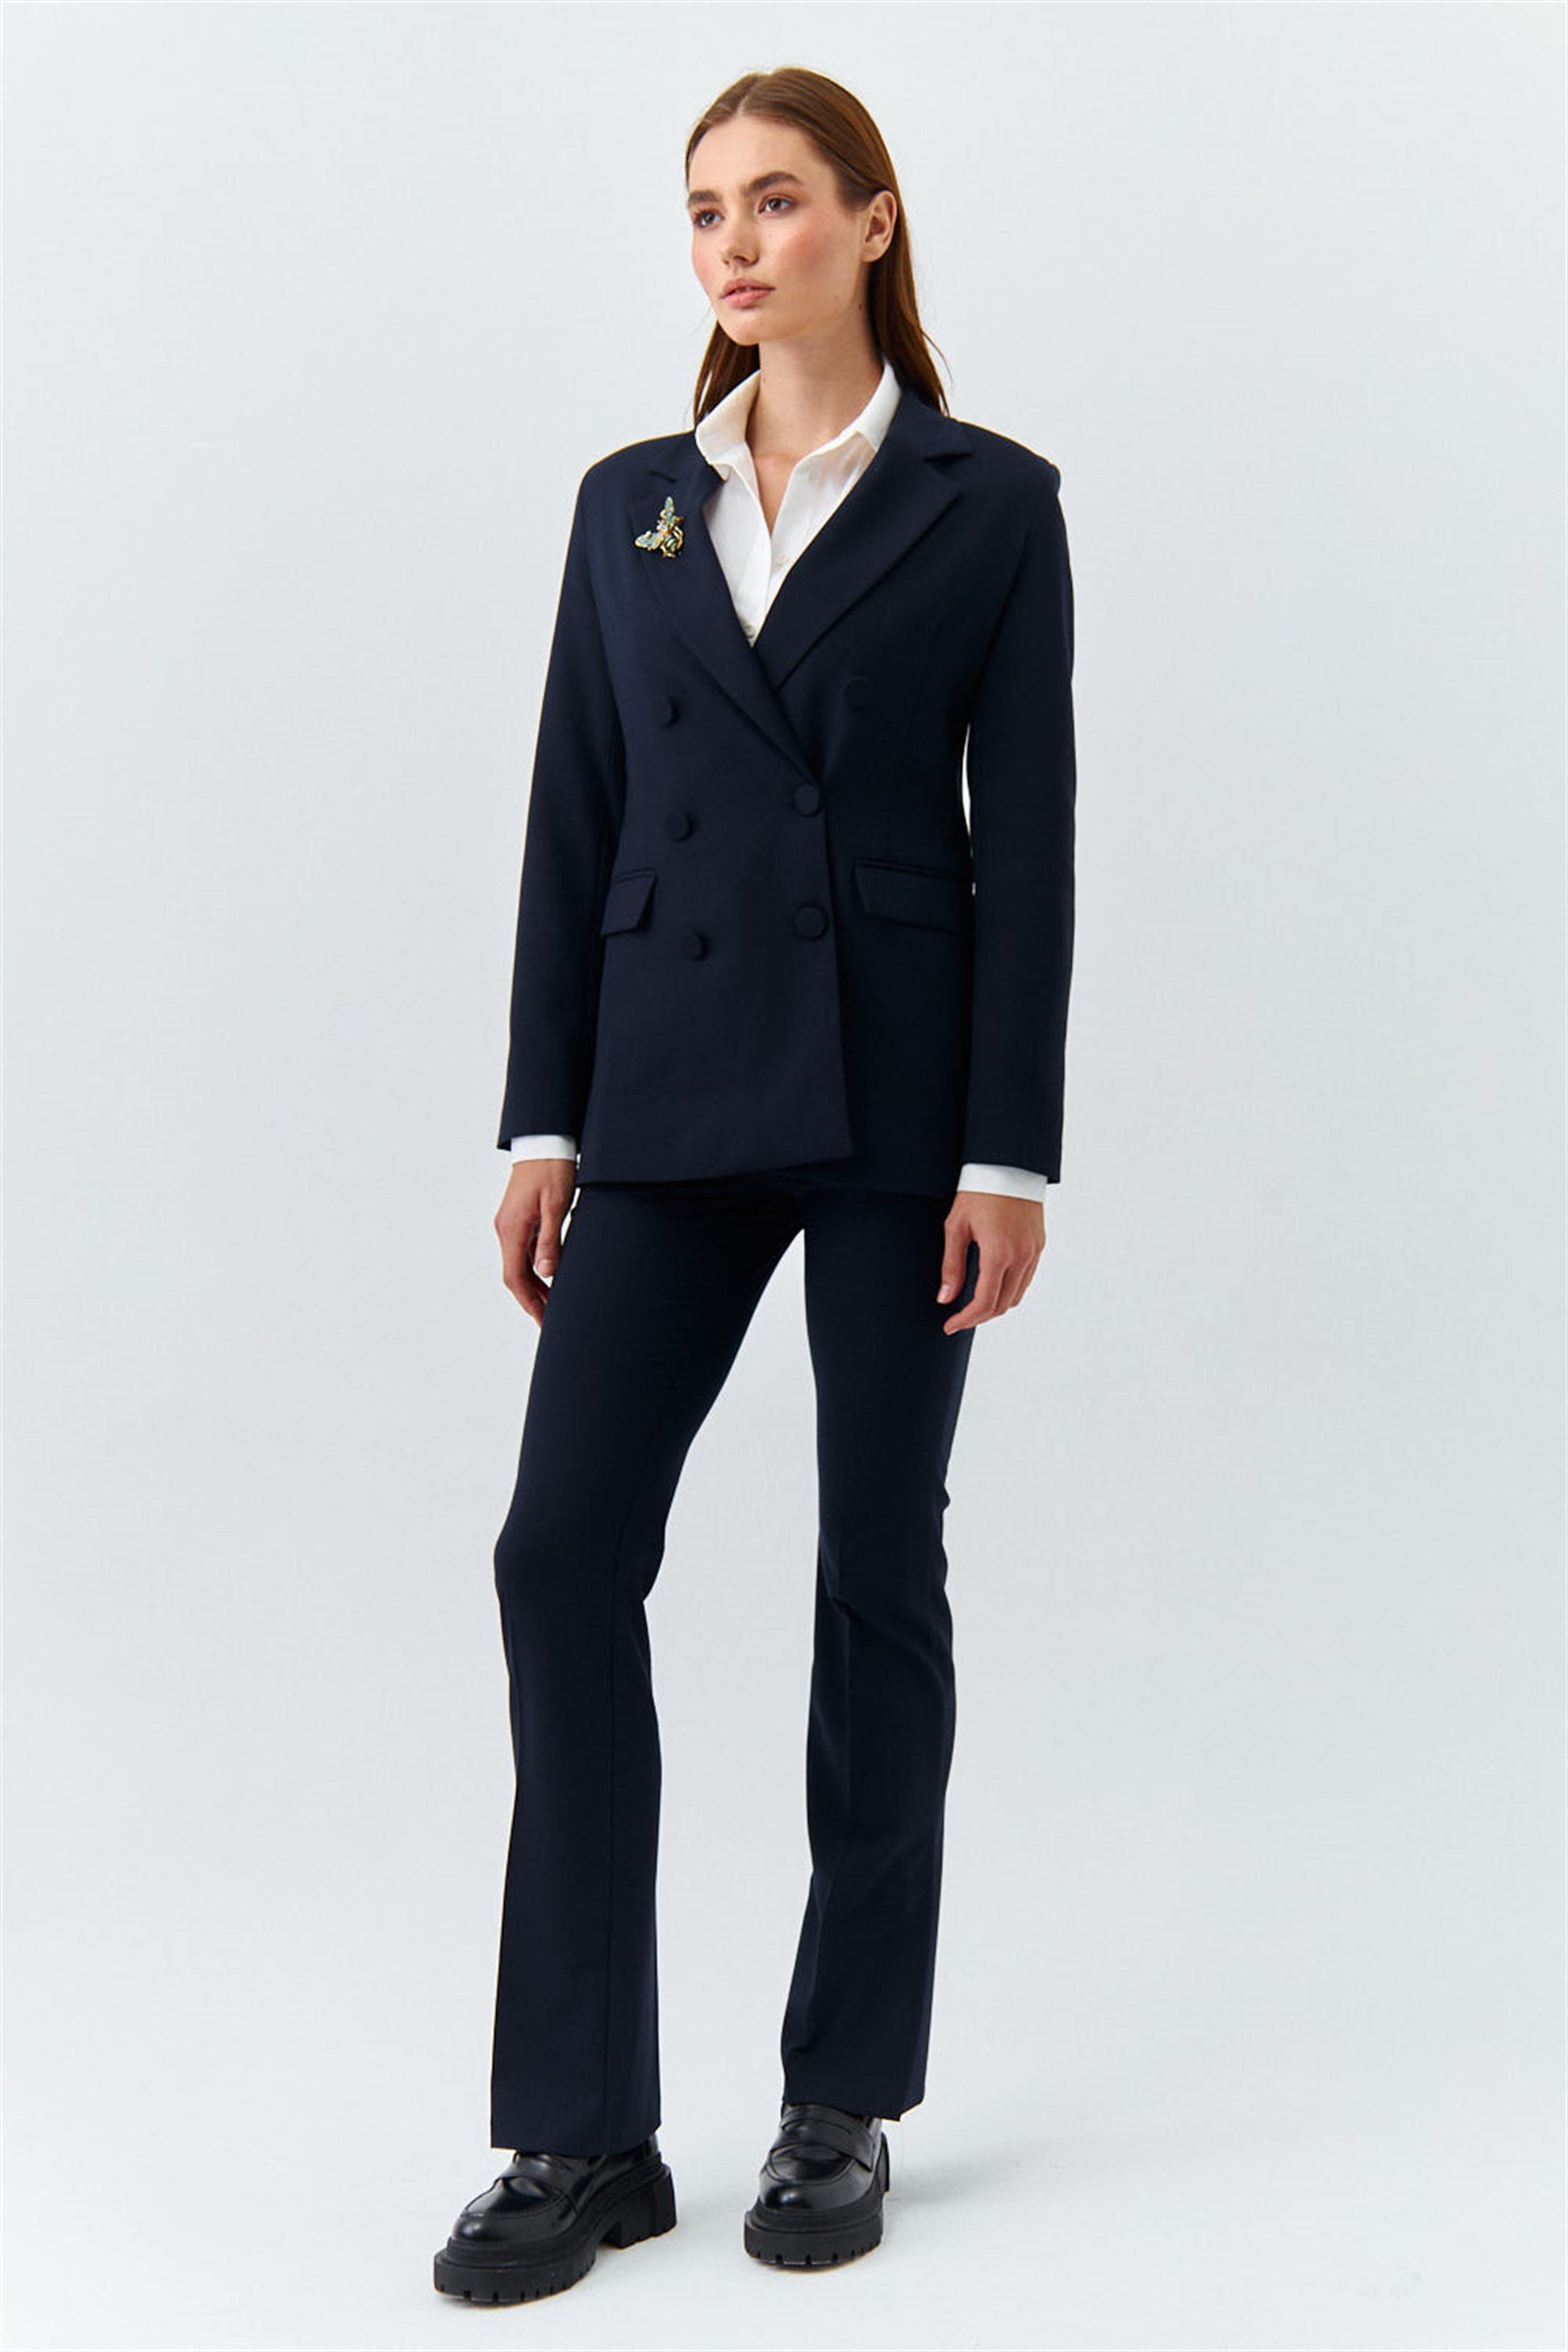 Blazer Ceket Pantolon Lacivert Kadın Takım | Tuba Butik